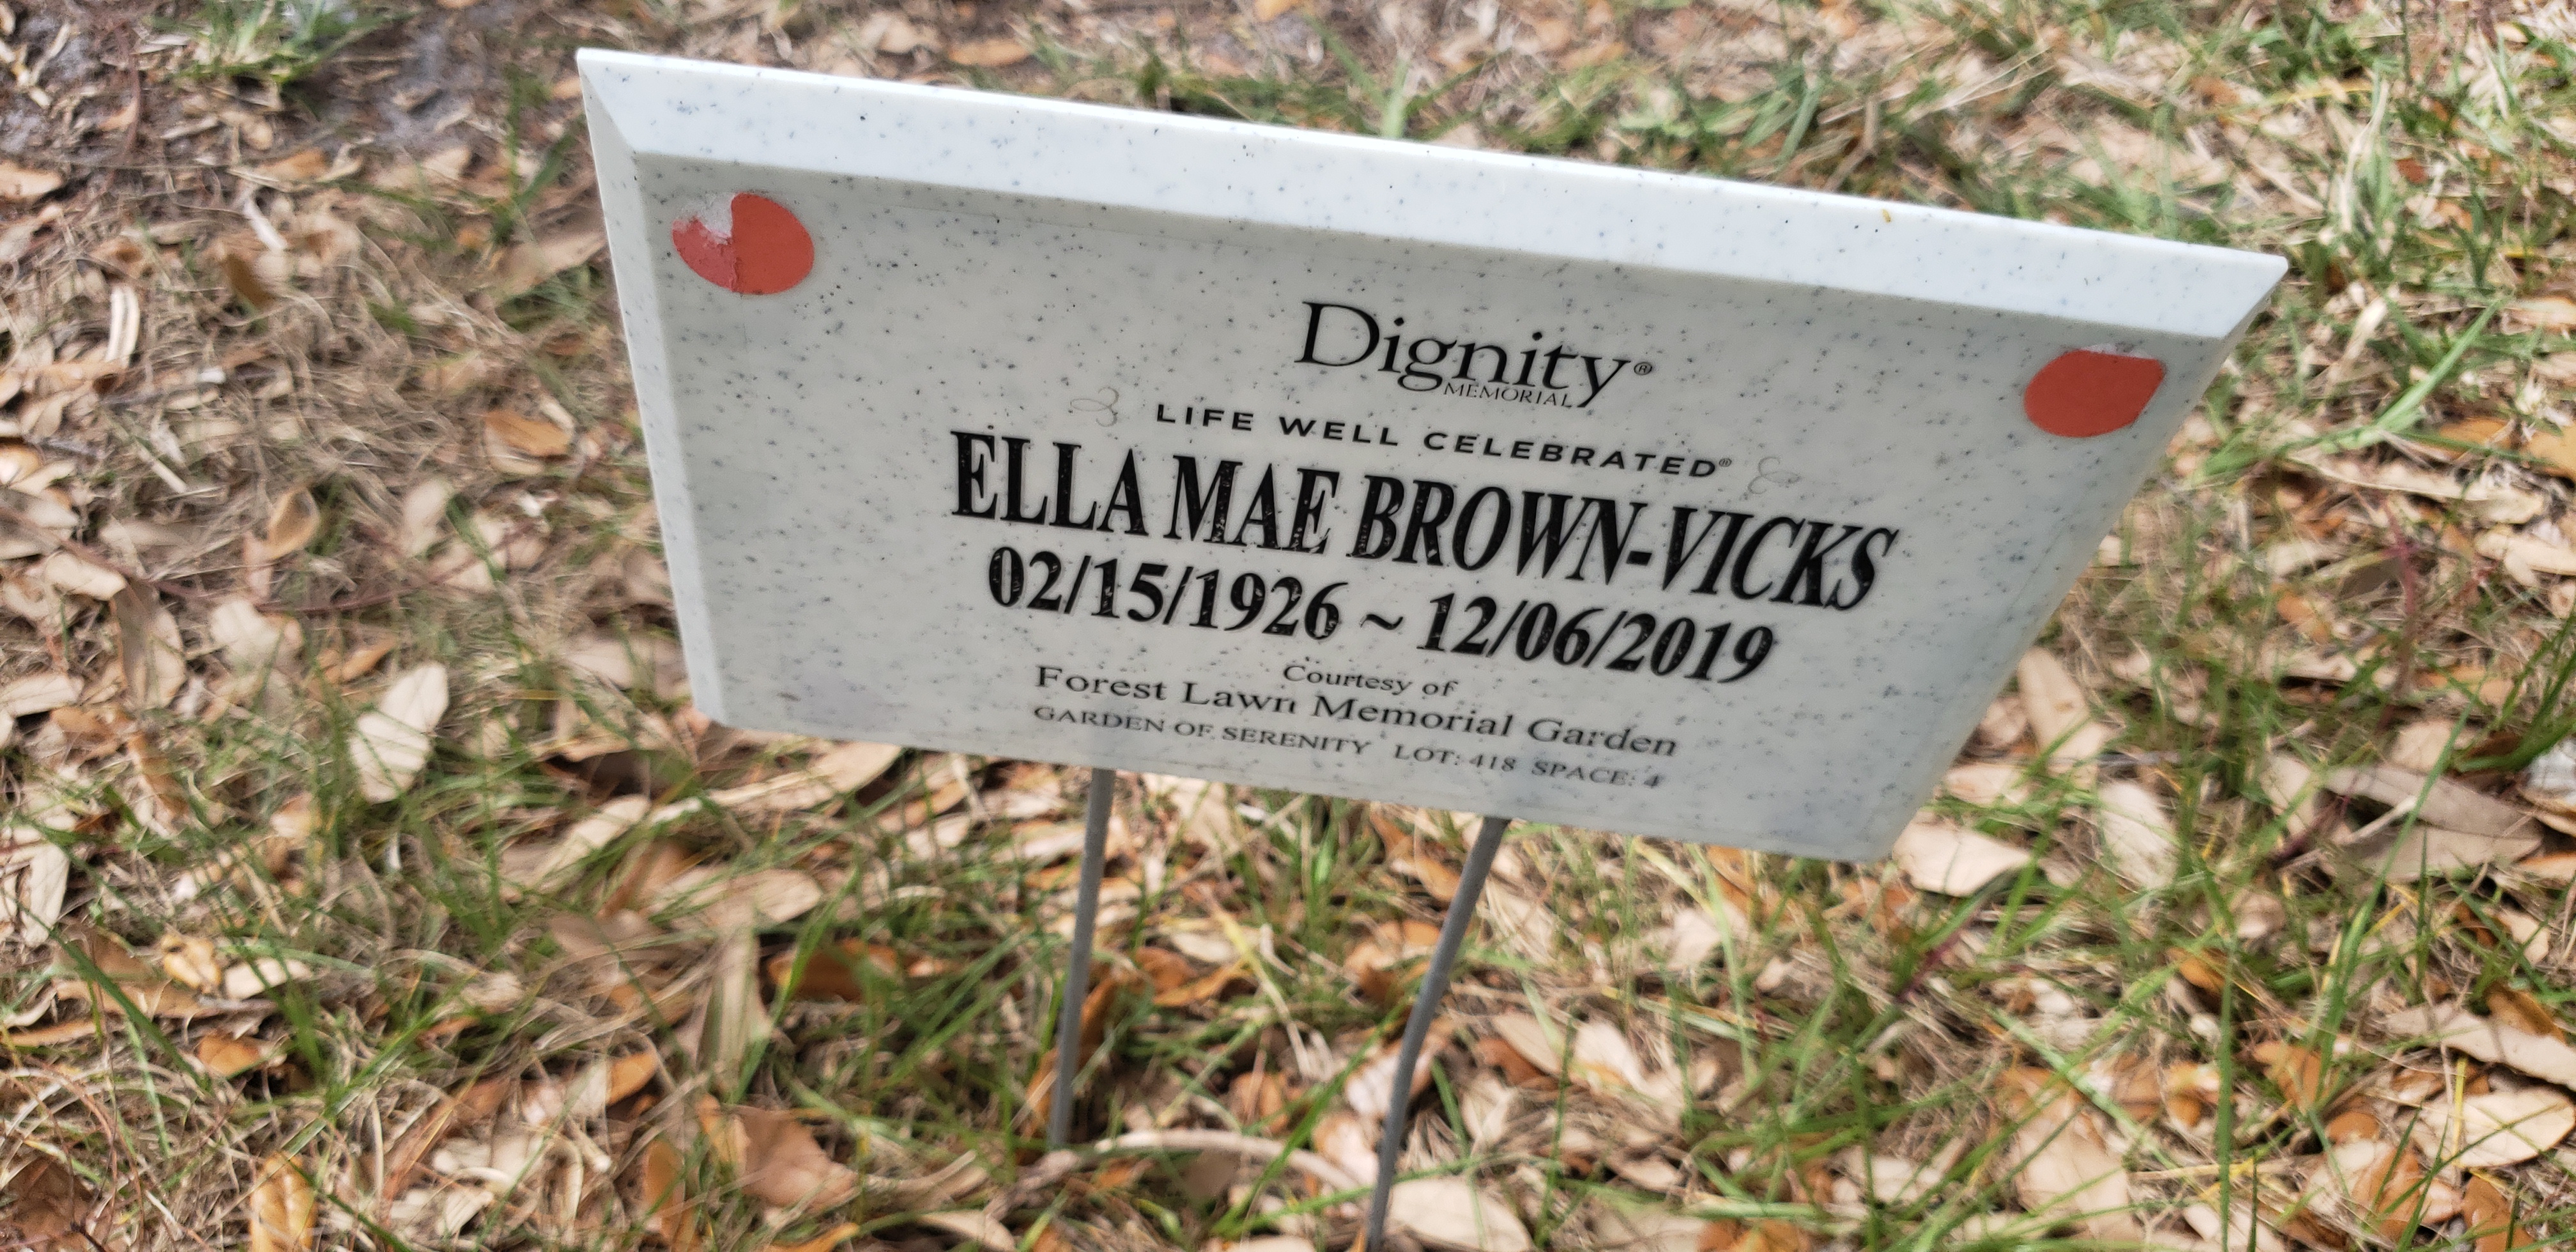 Ella Mae Brown-Vicks